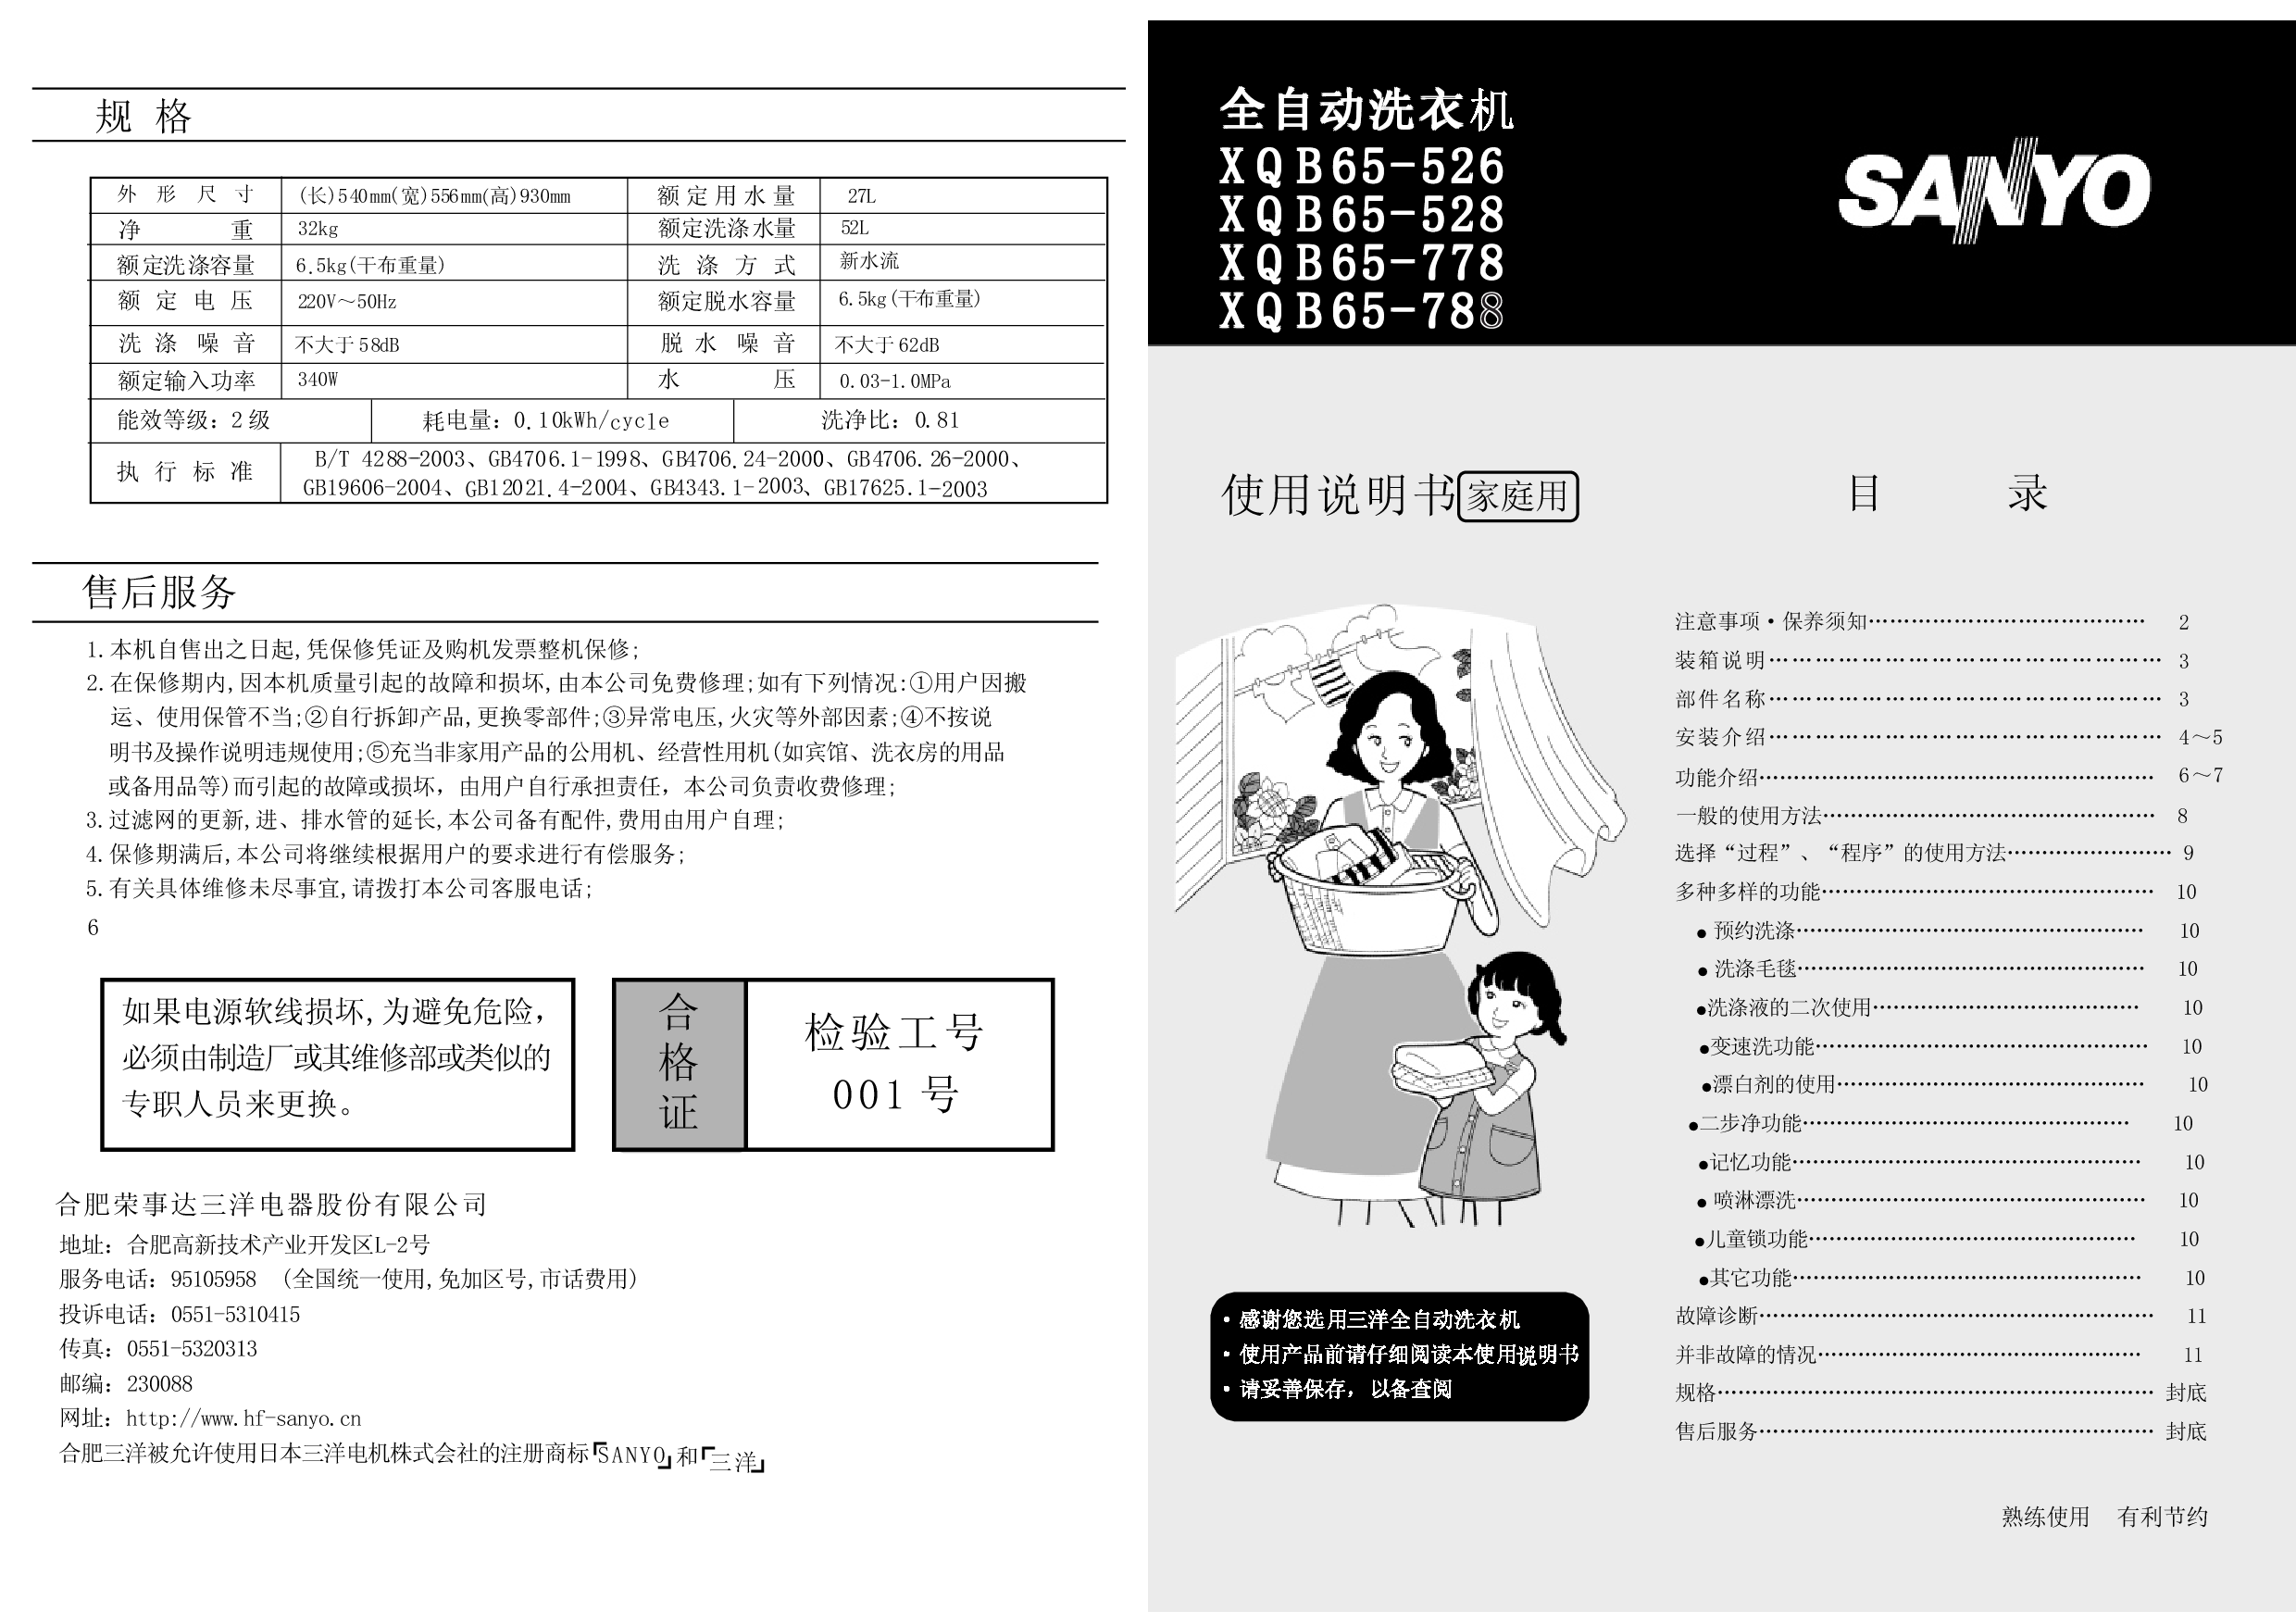 三洋 Sanyo XQB65-526 用户指南 封面